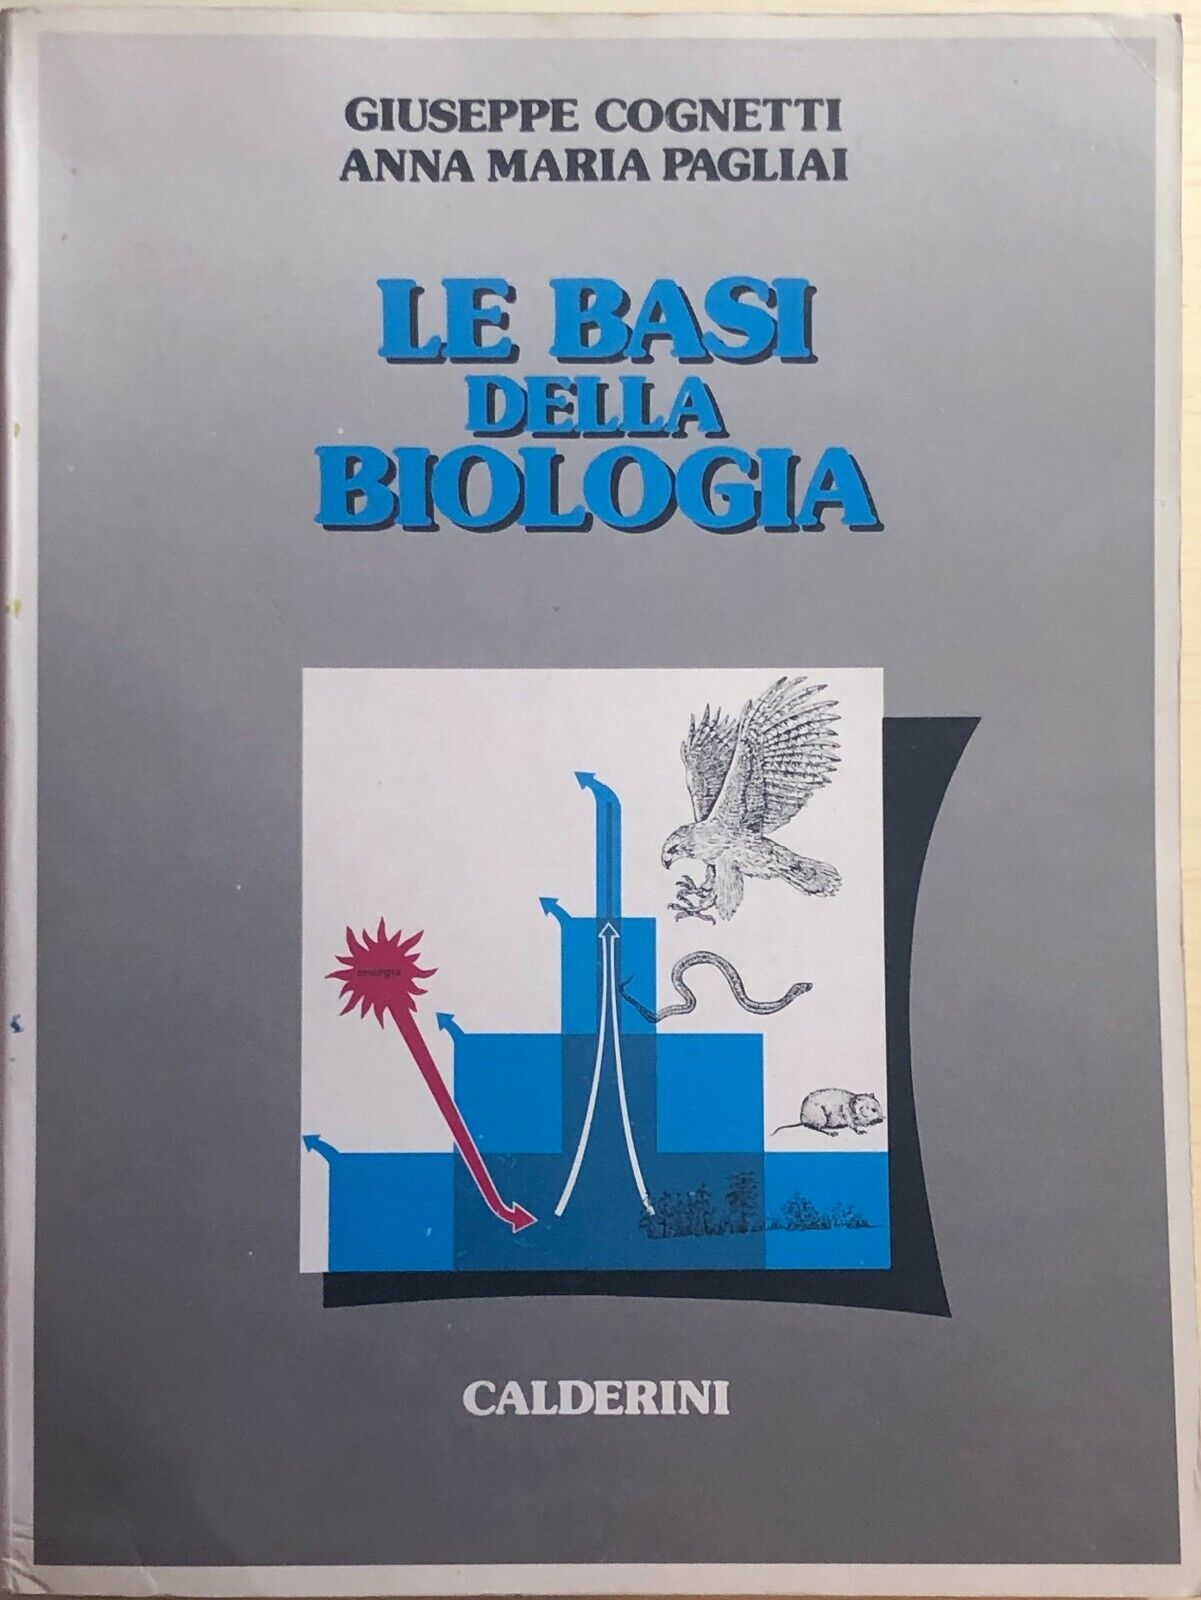 Le basi della biologia di Aa.vv., 1985, Calderini